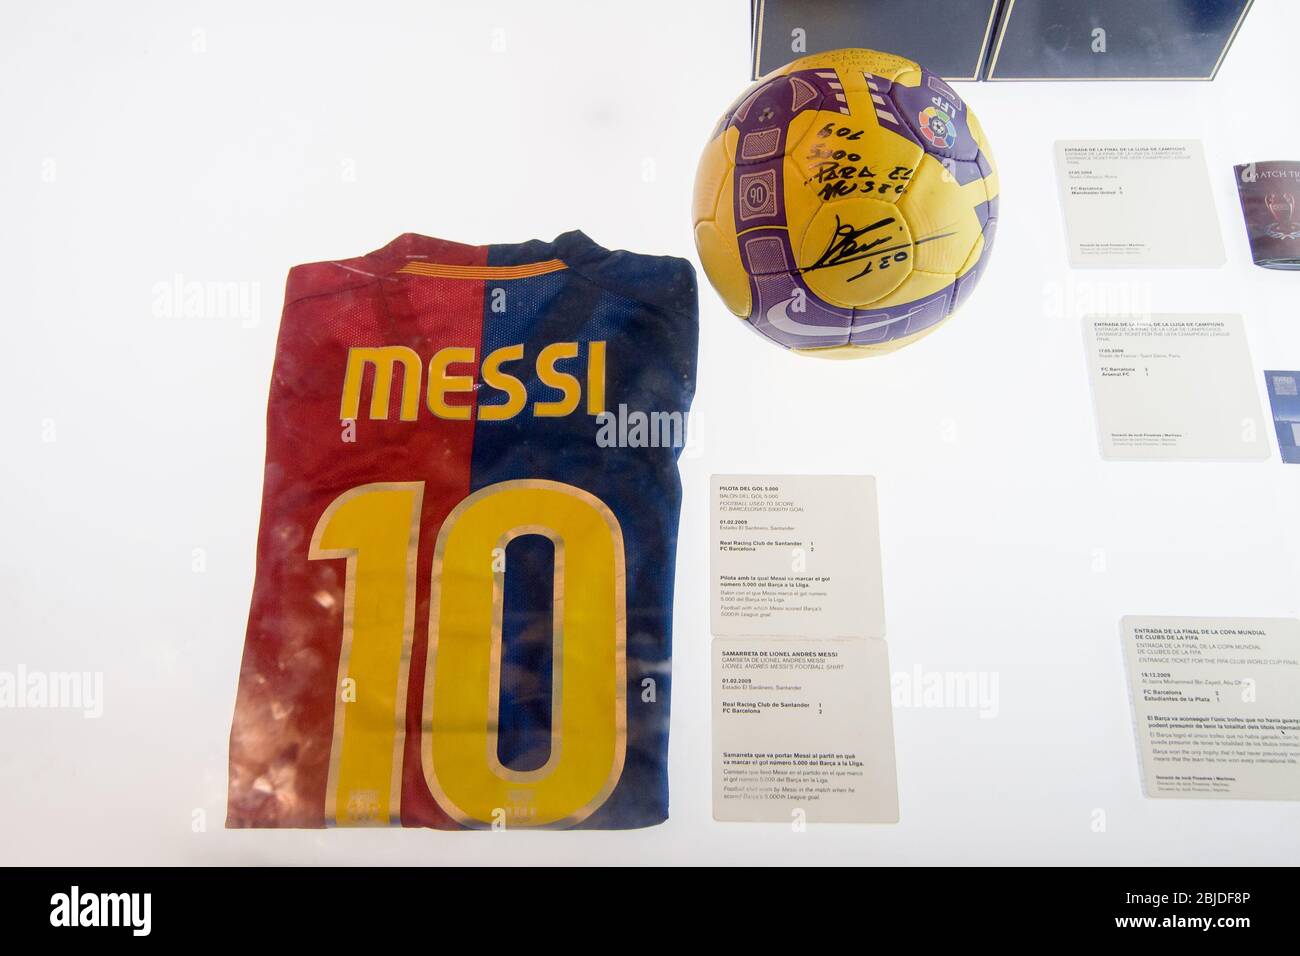 Barcelone, Espagne - 22 septembre 2014 : maillot de football porté par Lionel Messi lors du match lorsqu'il a marqué son objectif de la Ligue Barcelona 5000. Musée FC Barcelone Banque D'Images